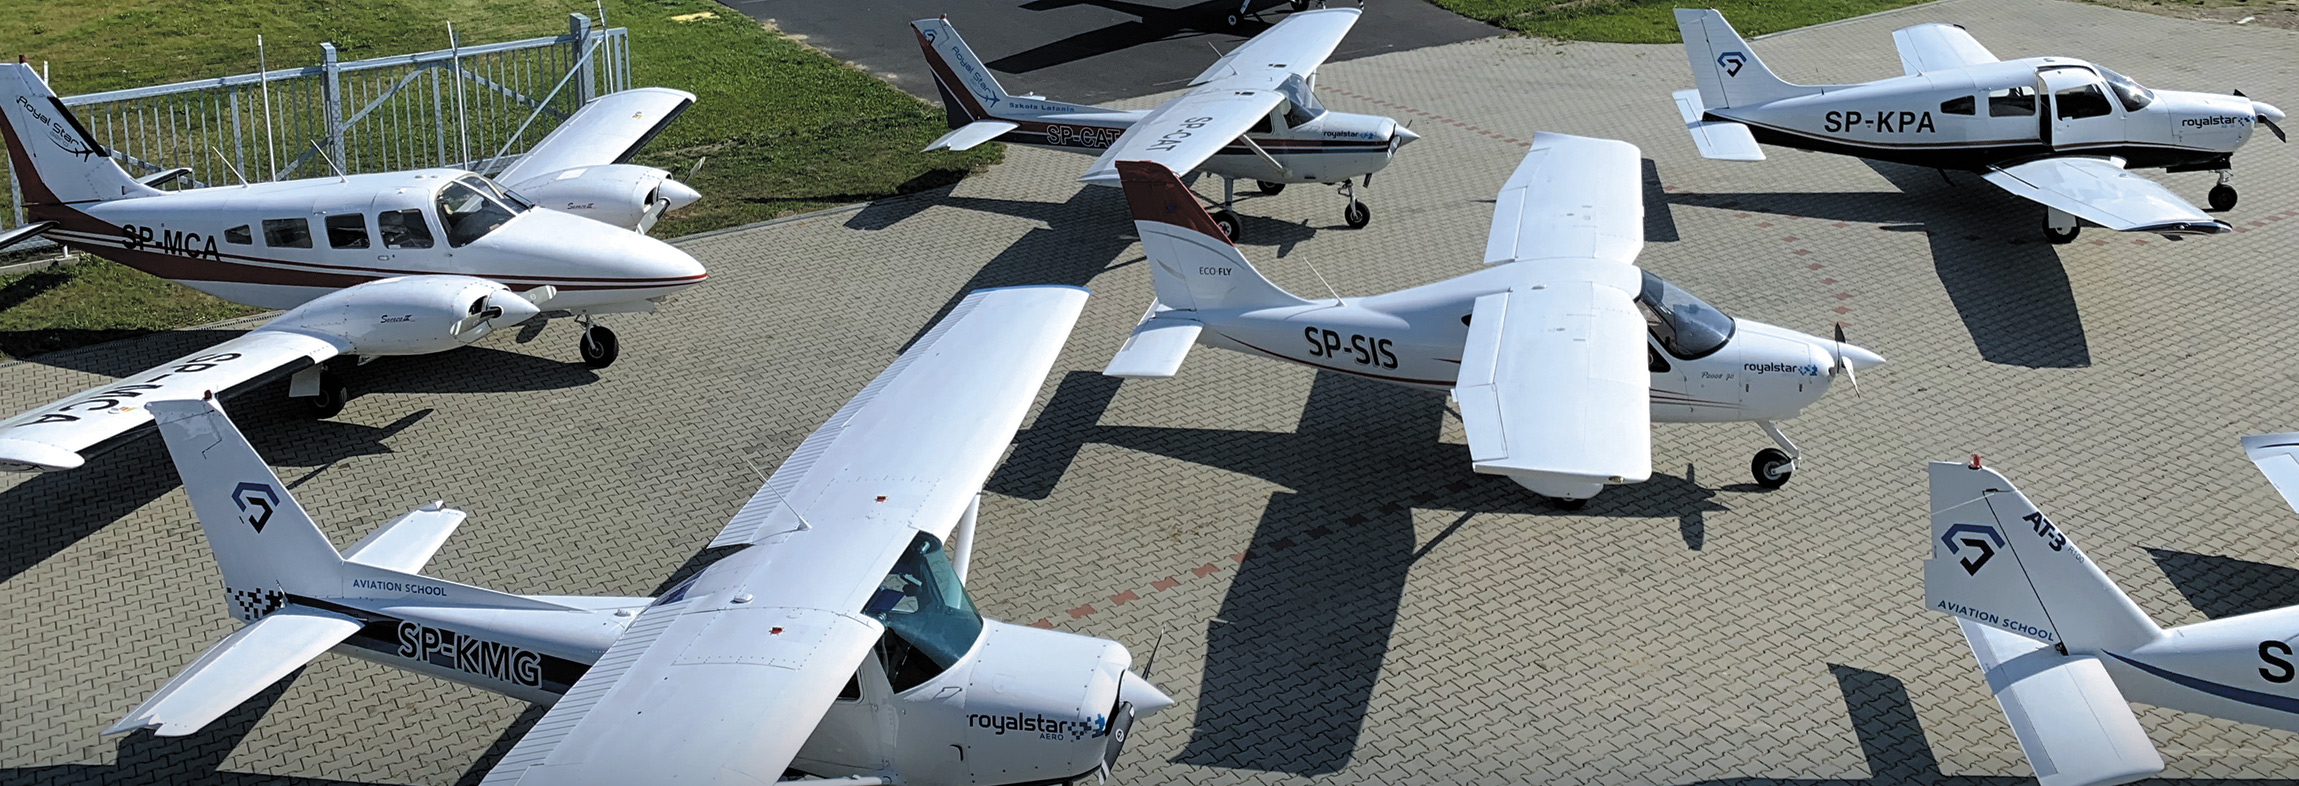 Aircraft fleet